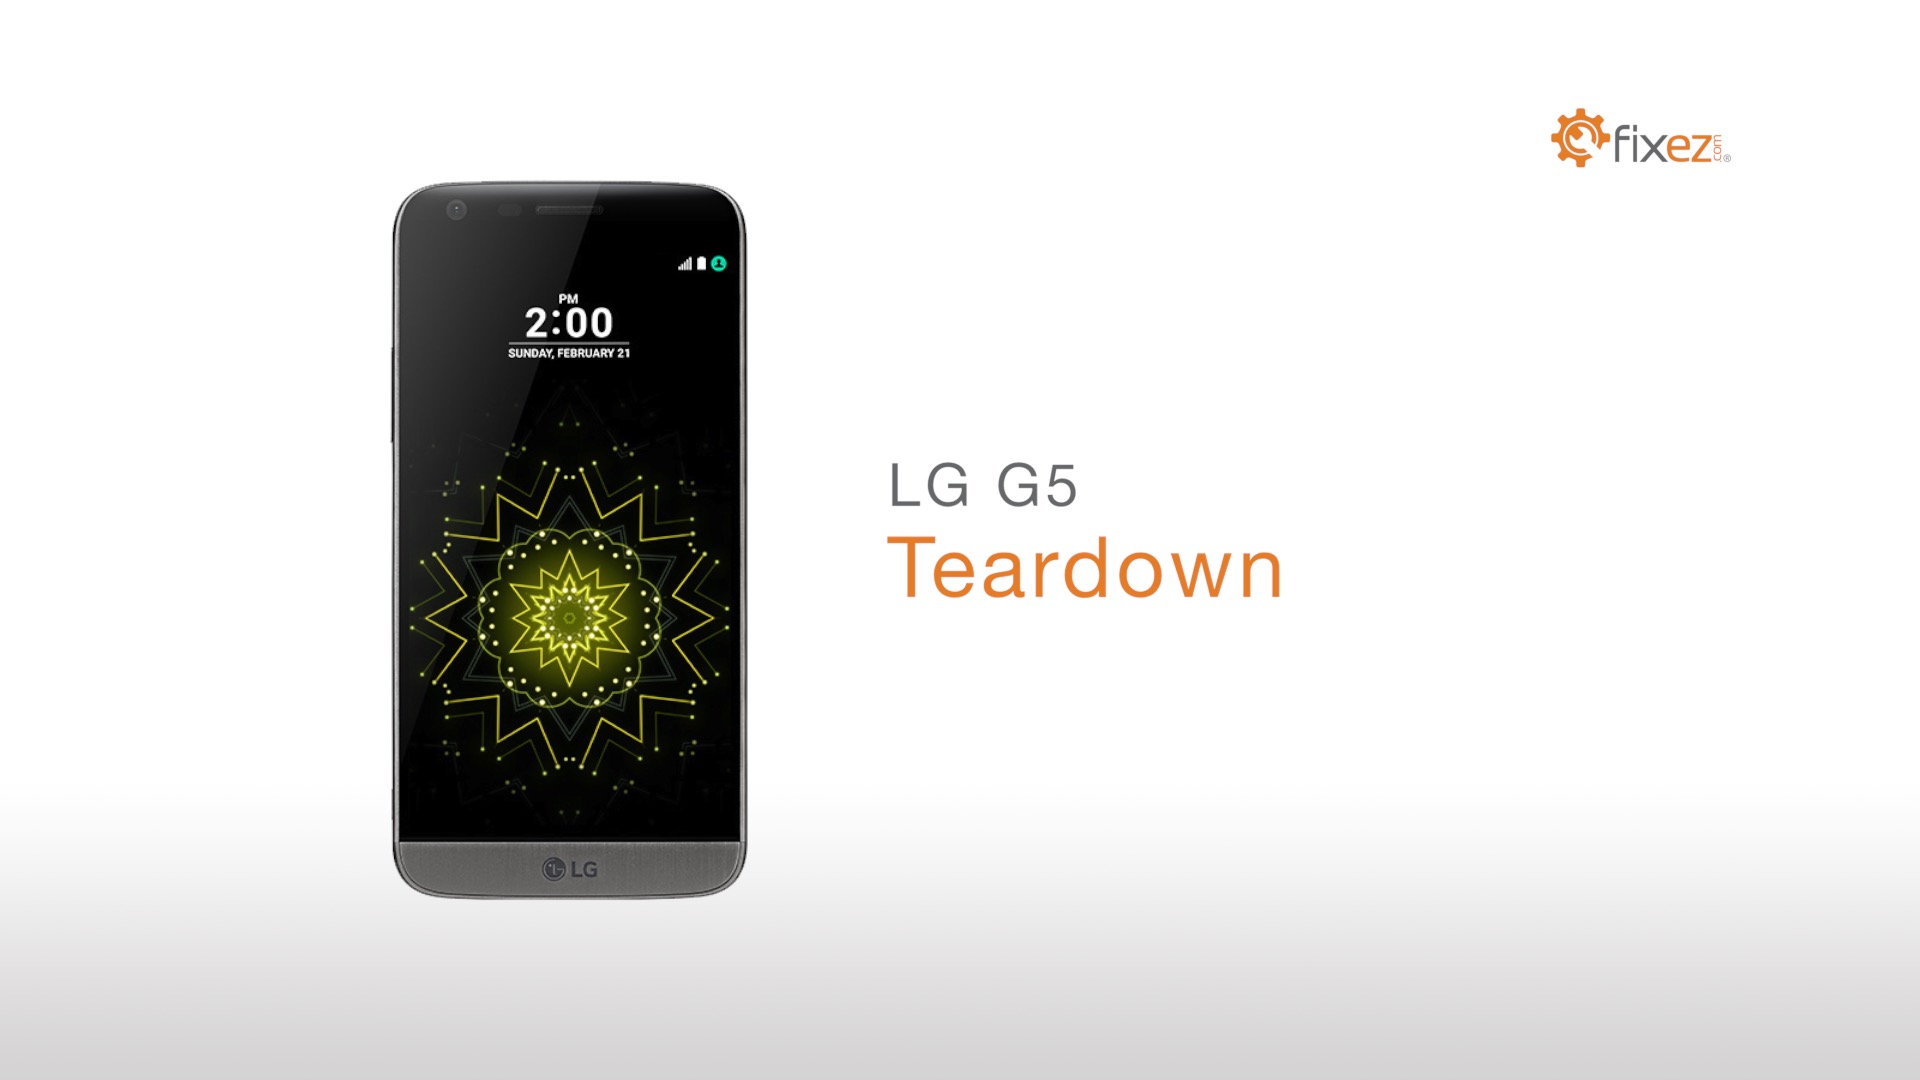 LG G5 Teardown